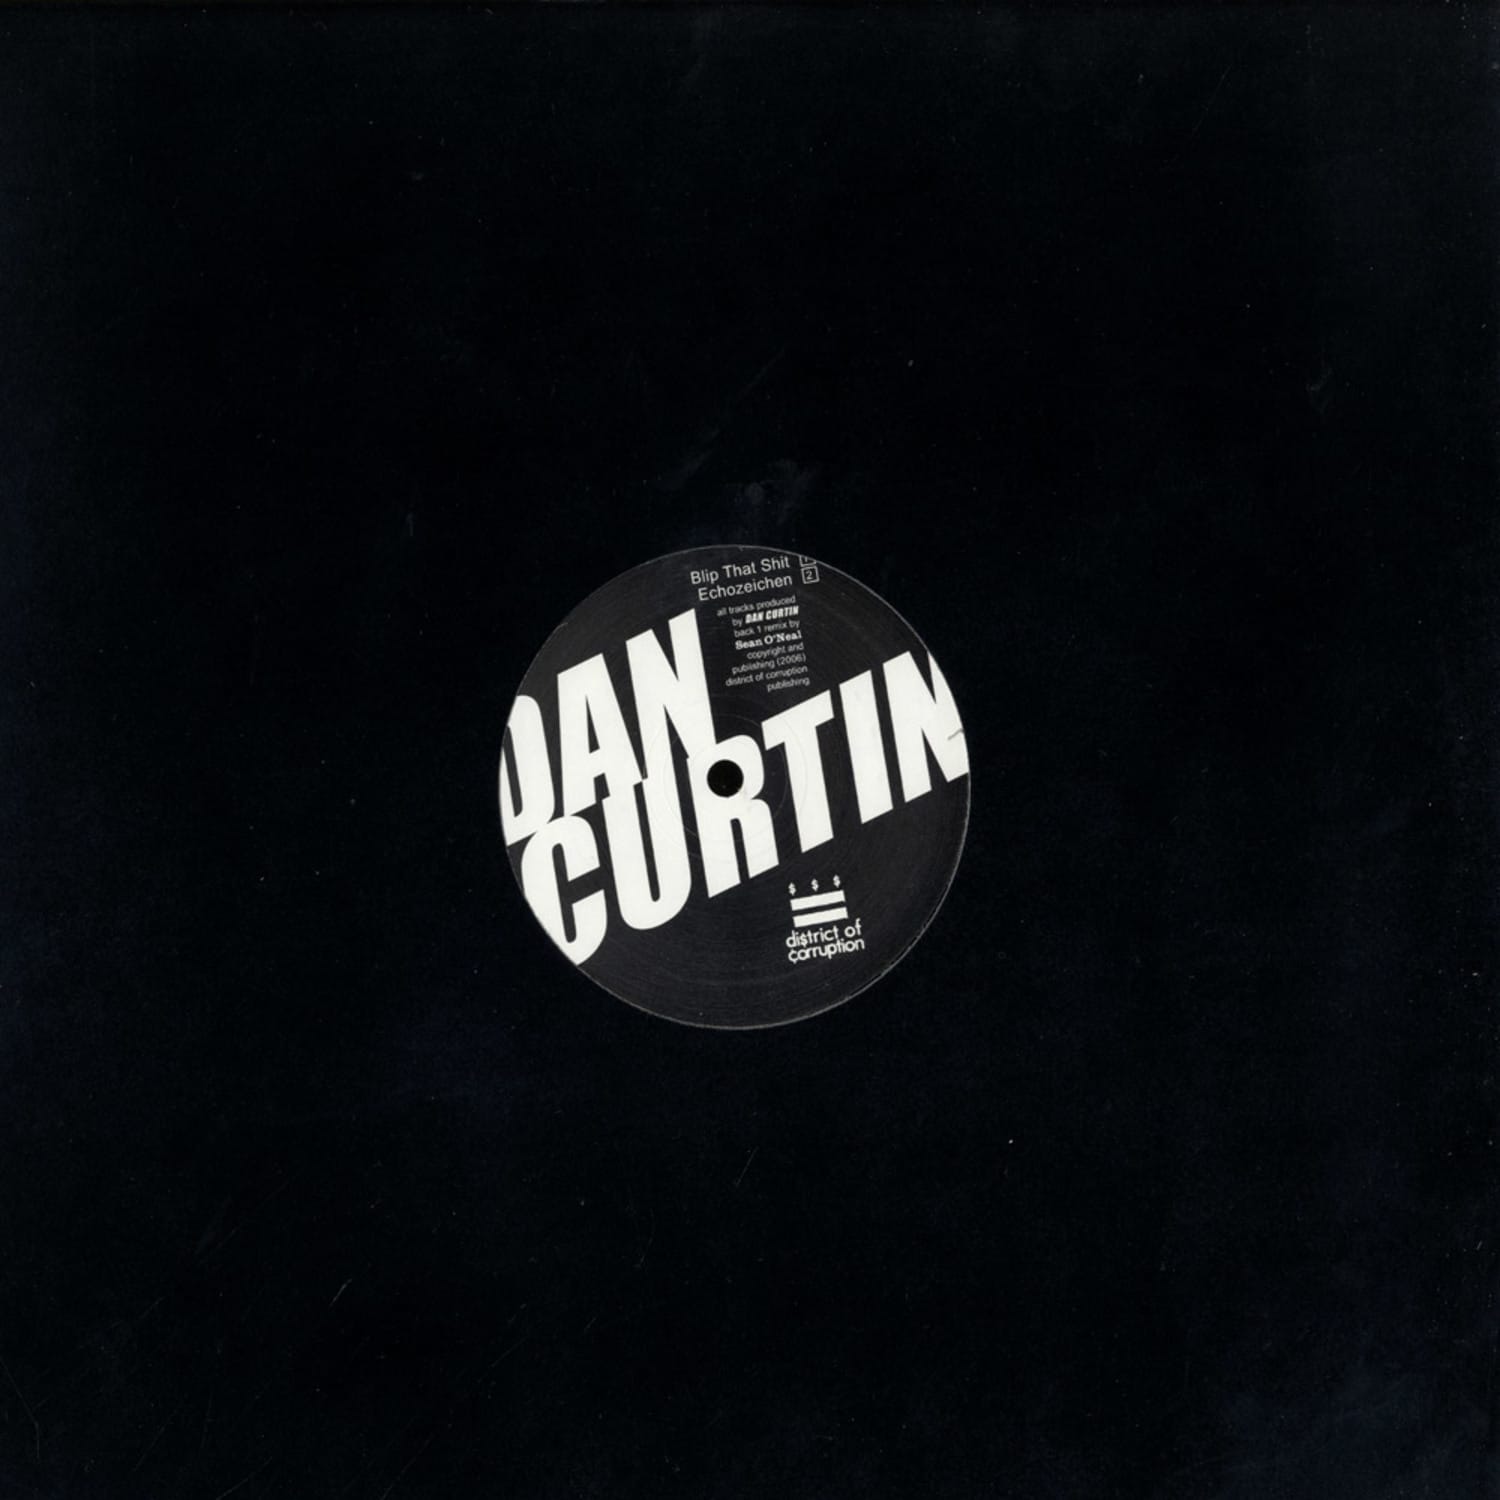 Dan Curtin - ECHOZEICHEN EP